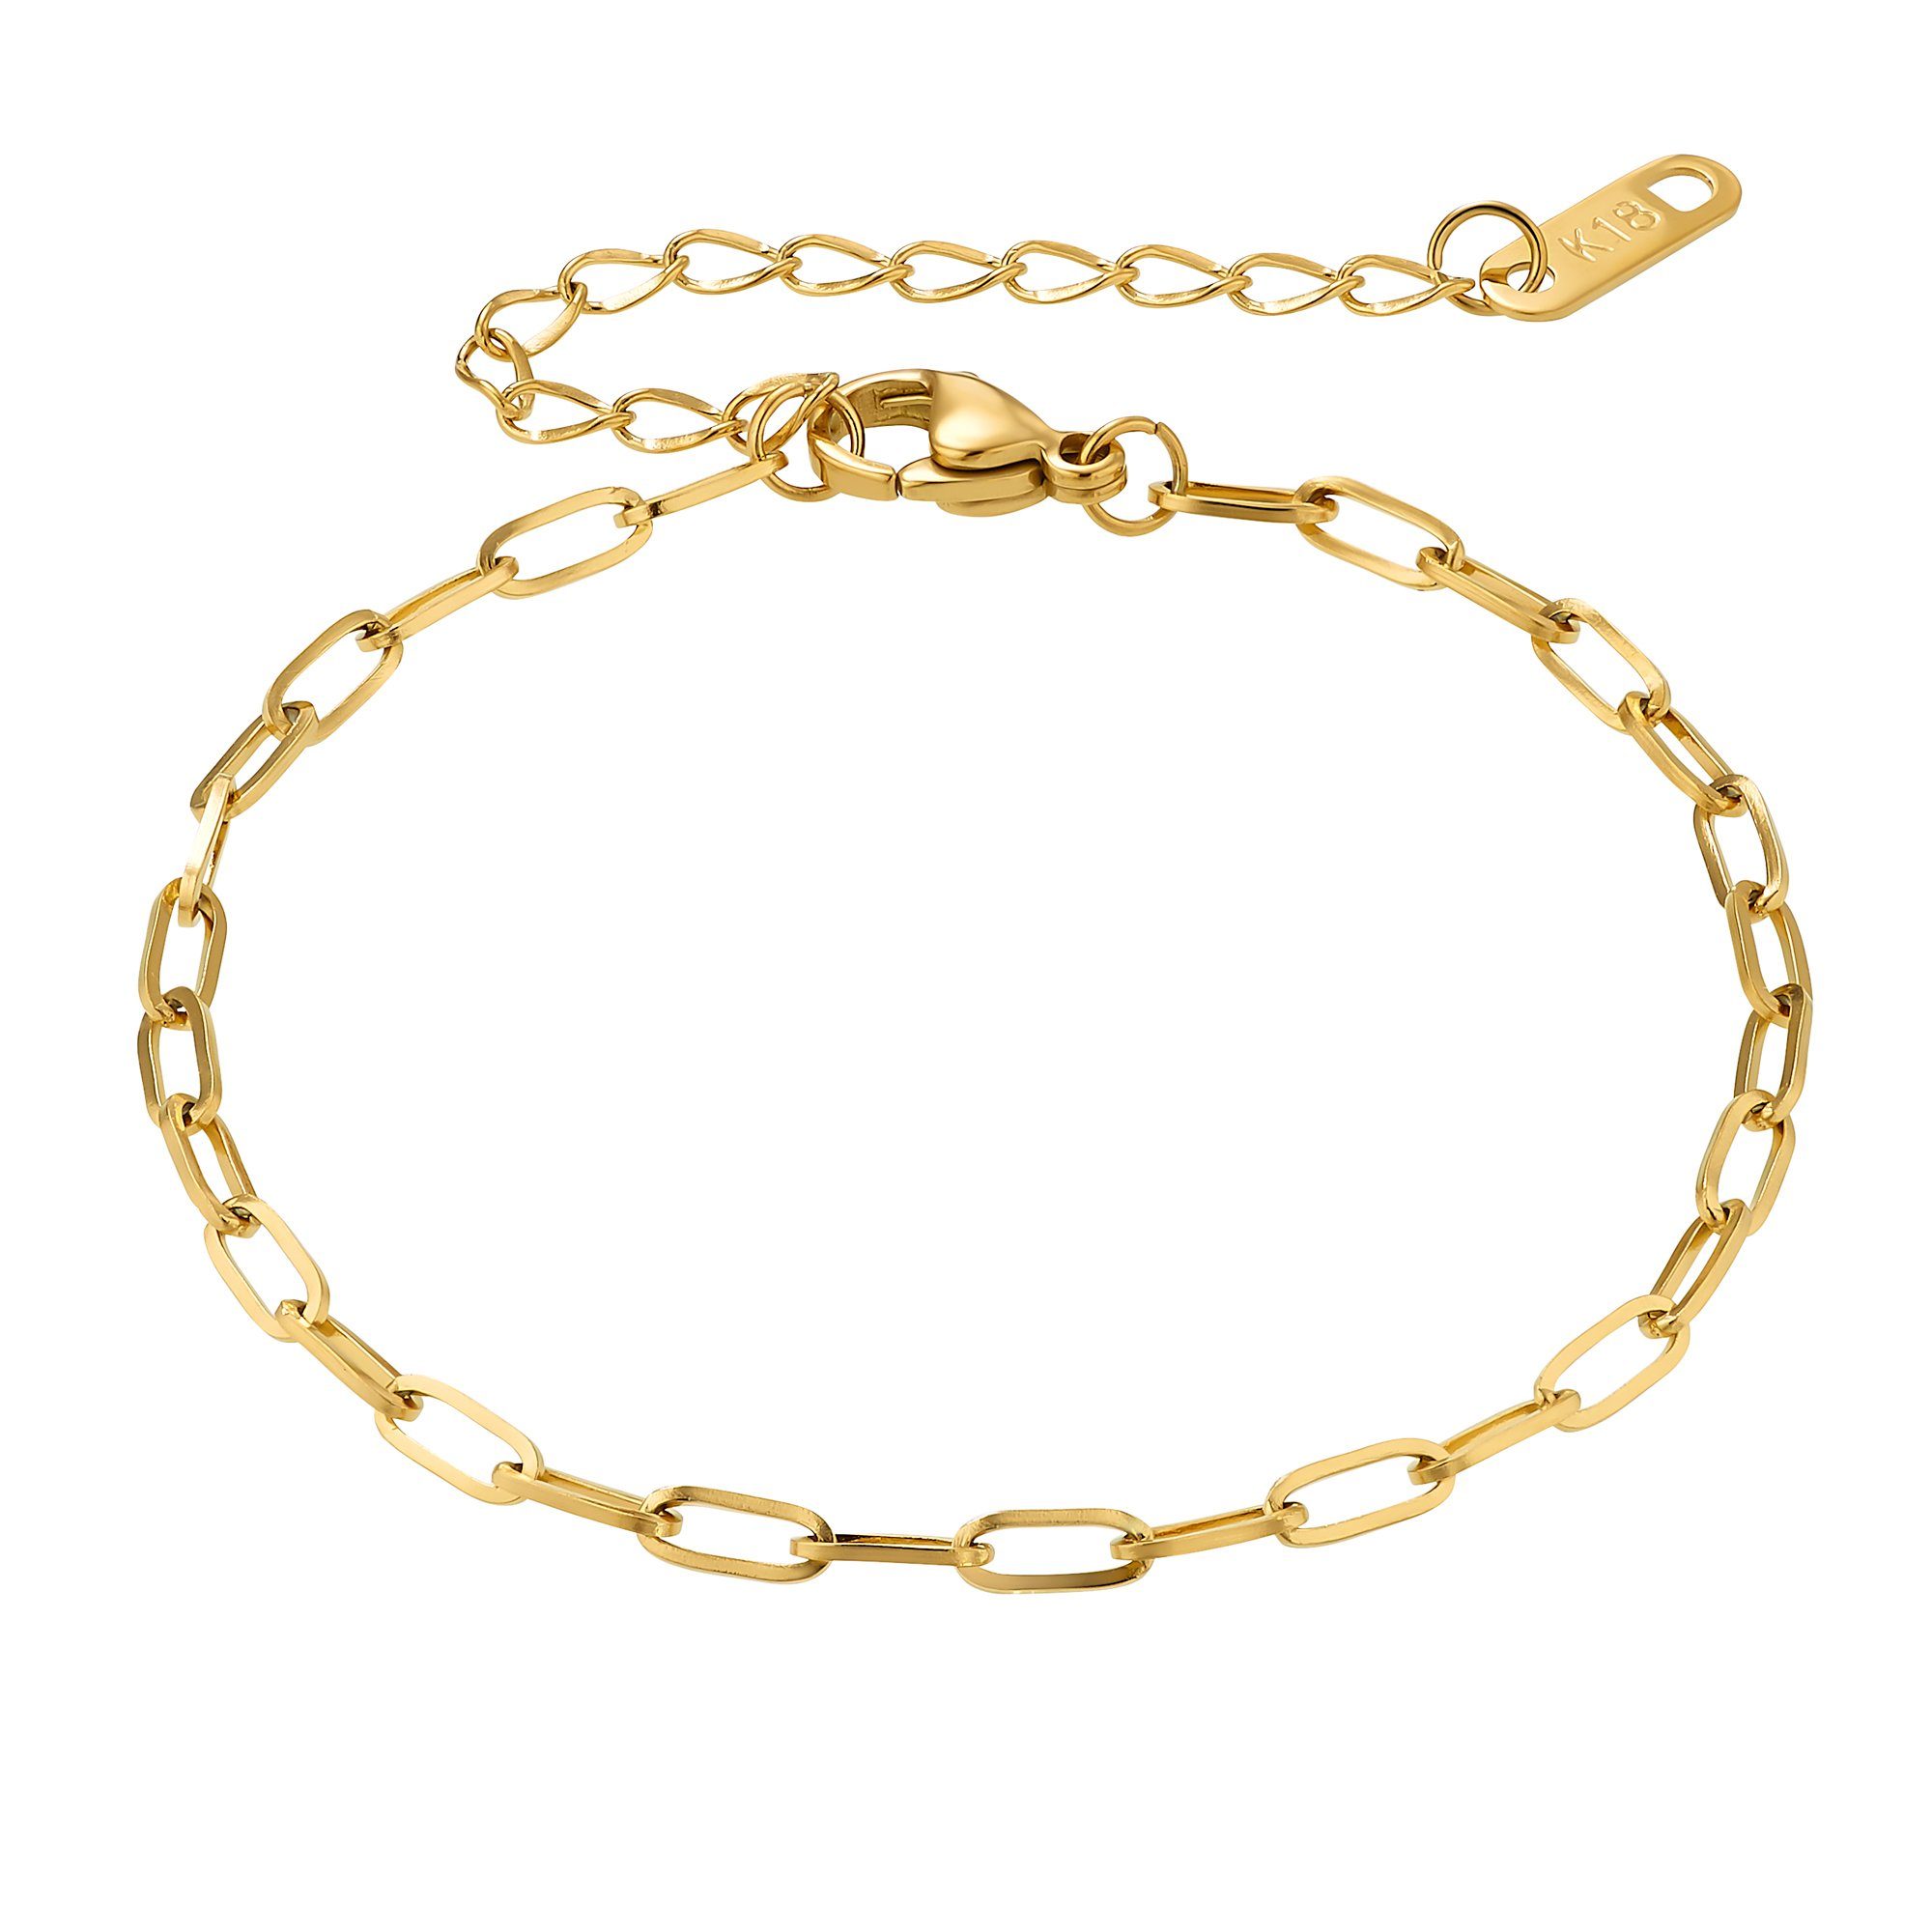 Heideman Armband Lana schwarz farben (Armband, inkl. Geschenkverpackung), Armkette für Frauen goldfarben